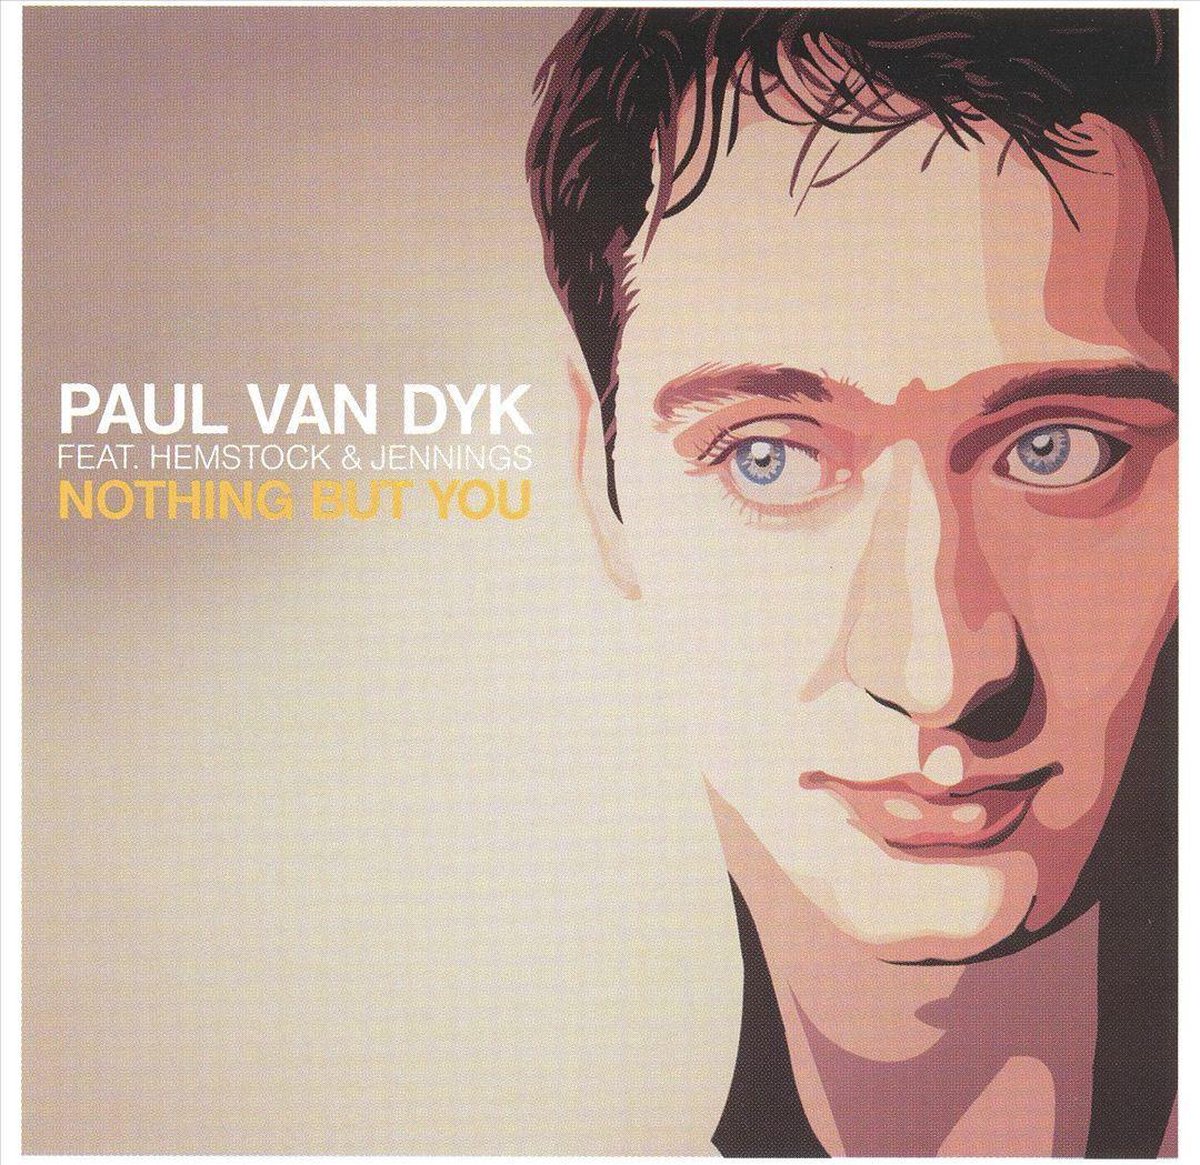 Nothing But You - Paul van Dyk